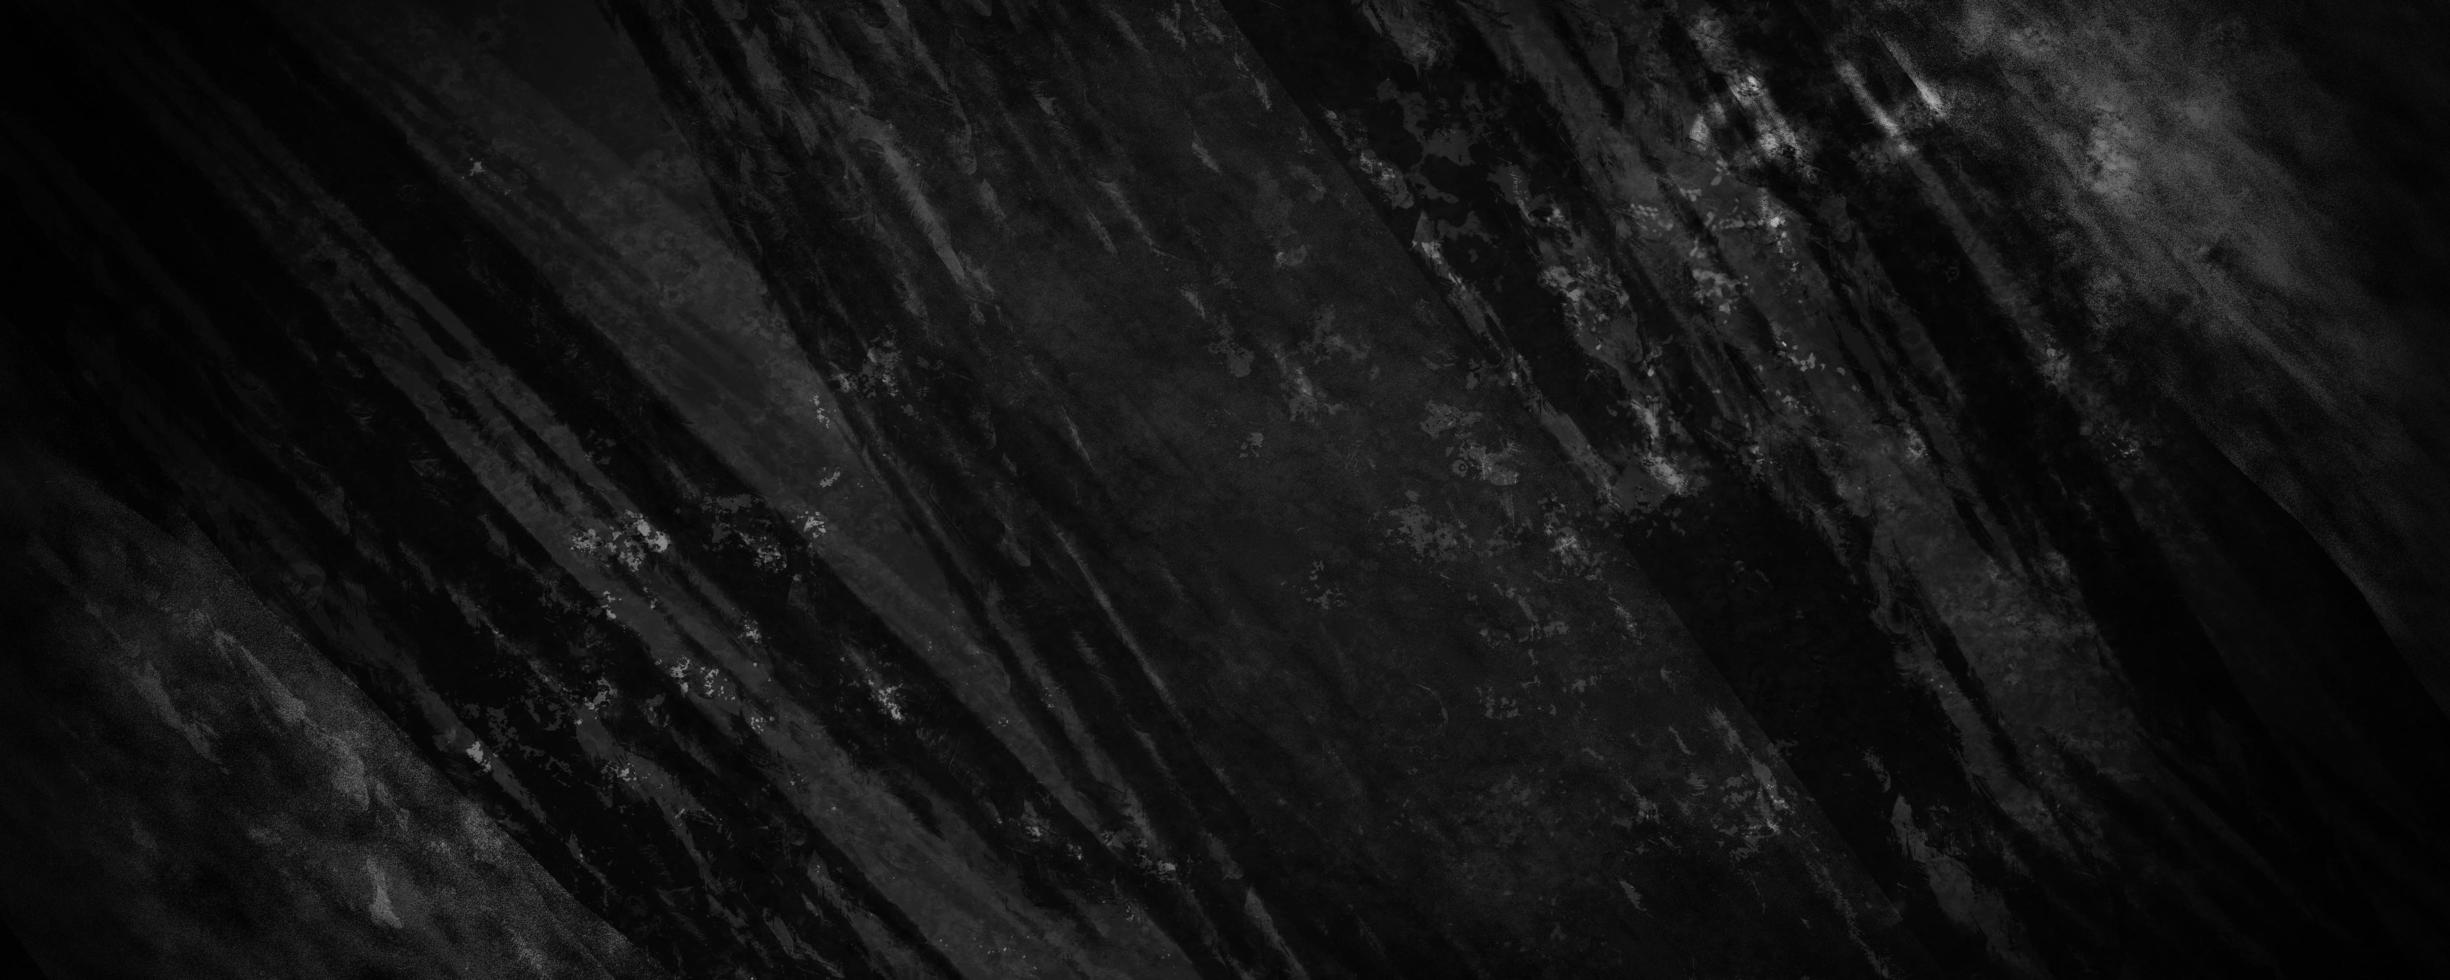 zwarte betoncement korrelige en onscherpe achtergrond met donkergrijze scheuren en verfrommelde rimpels foto